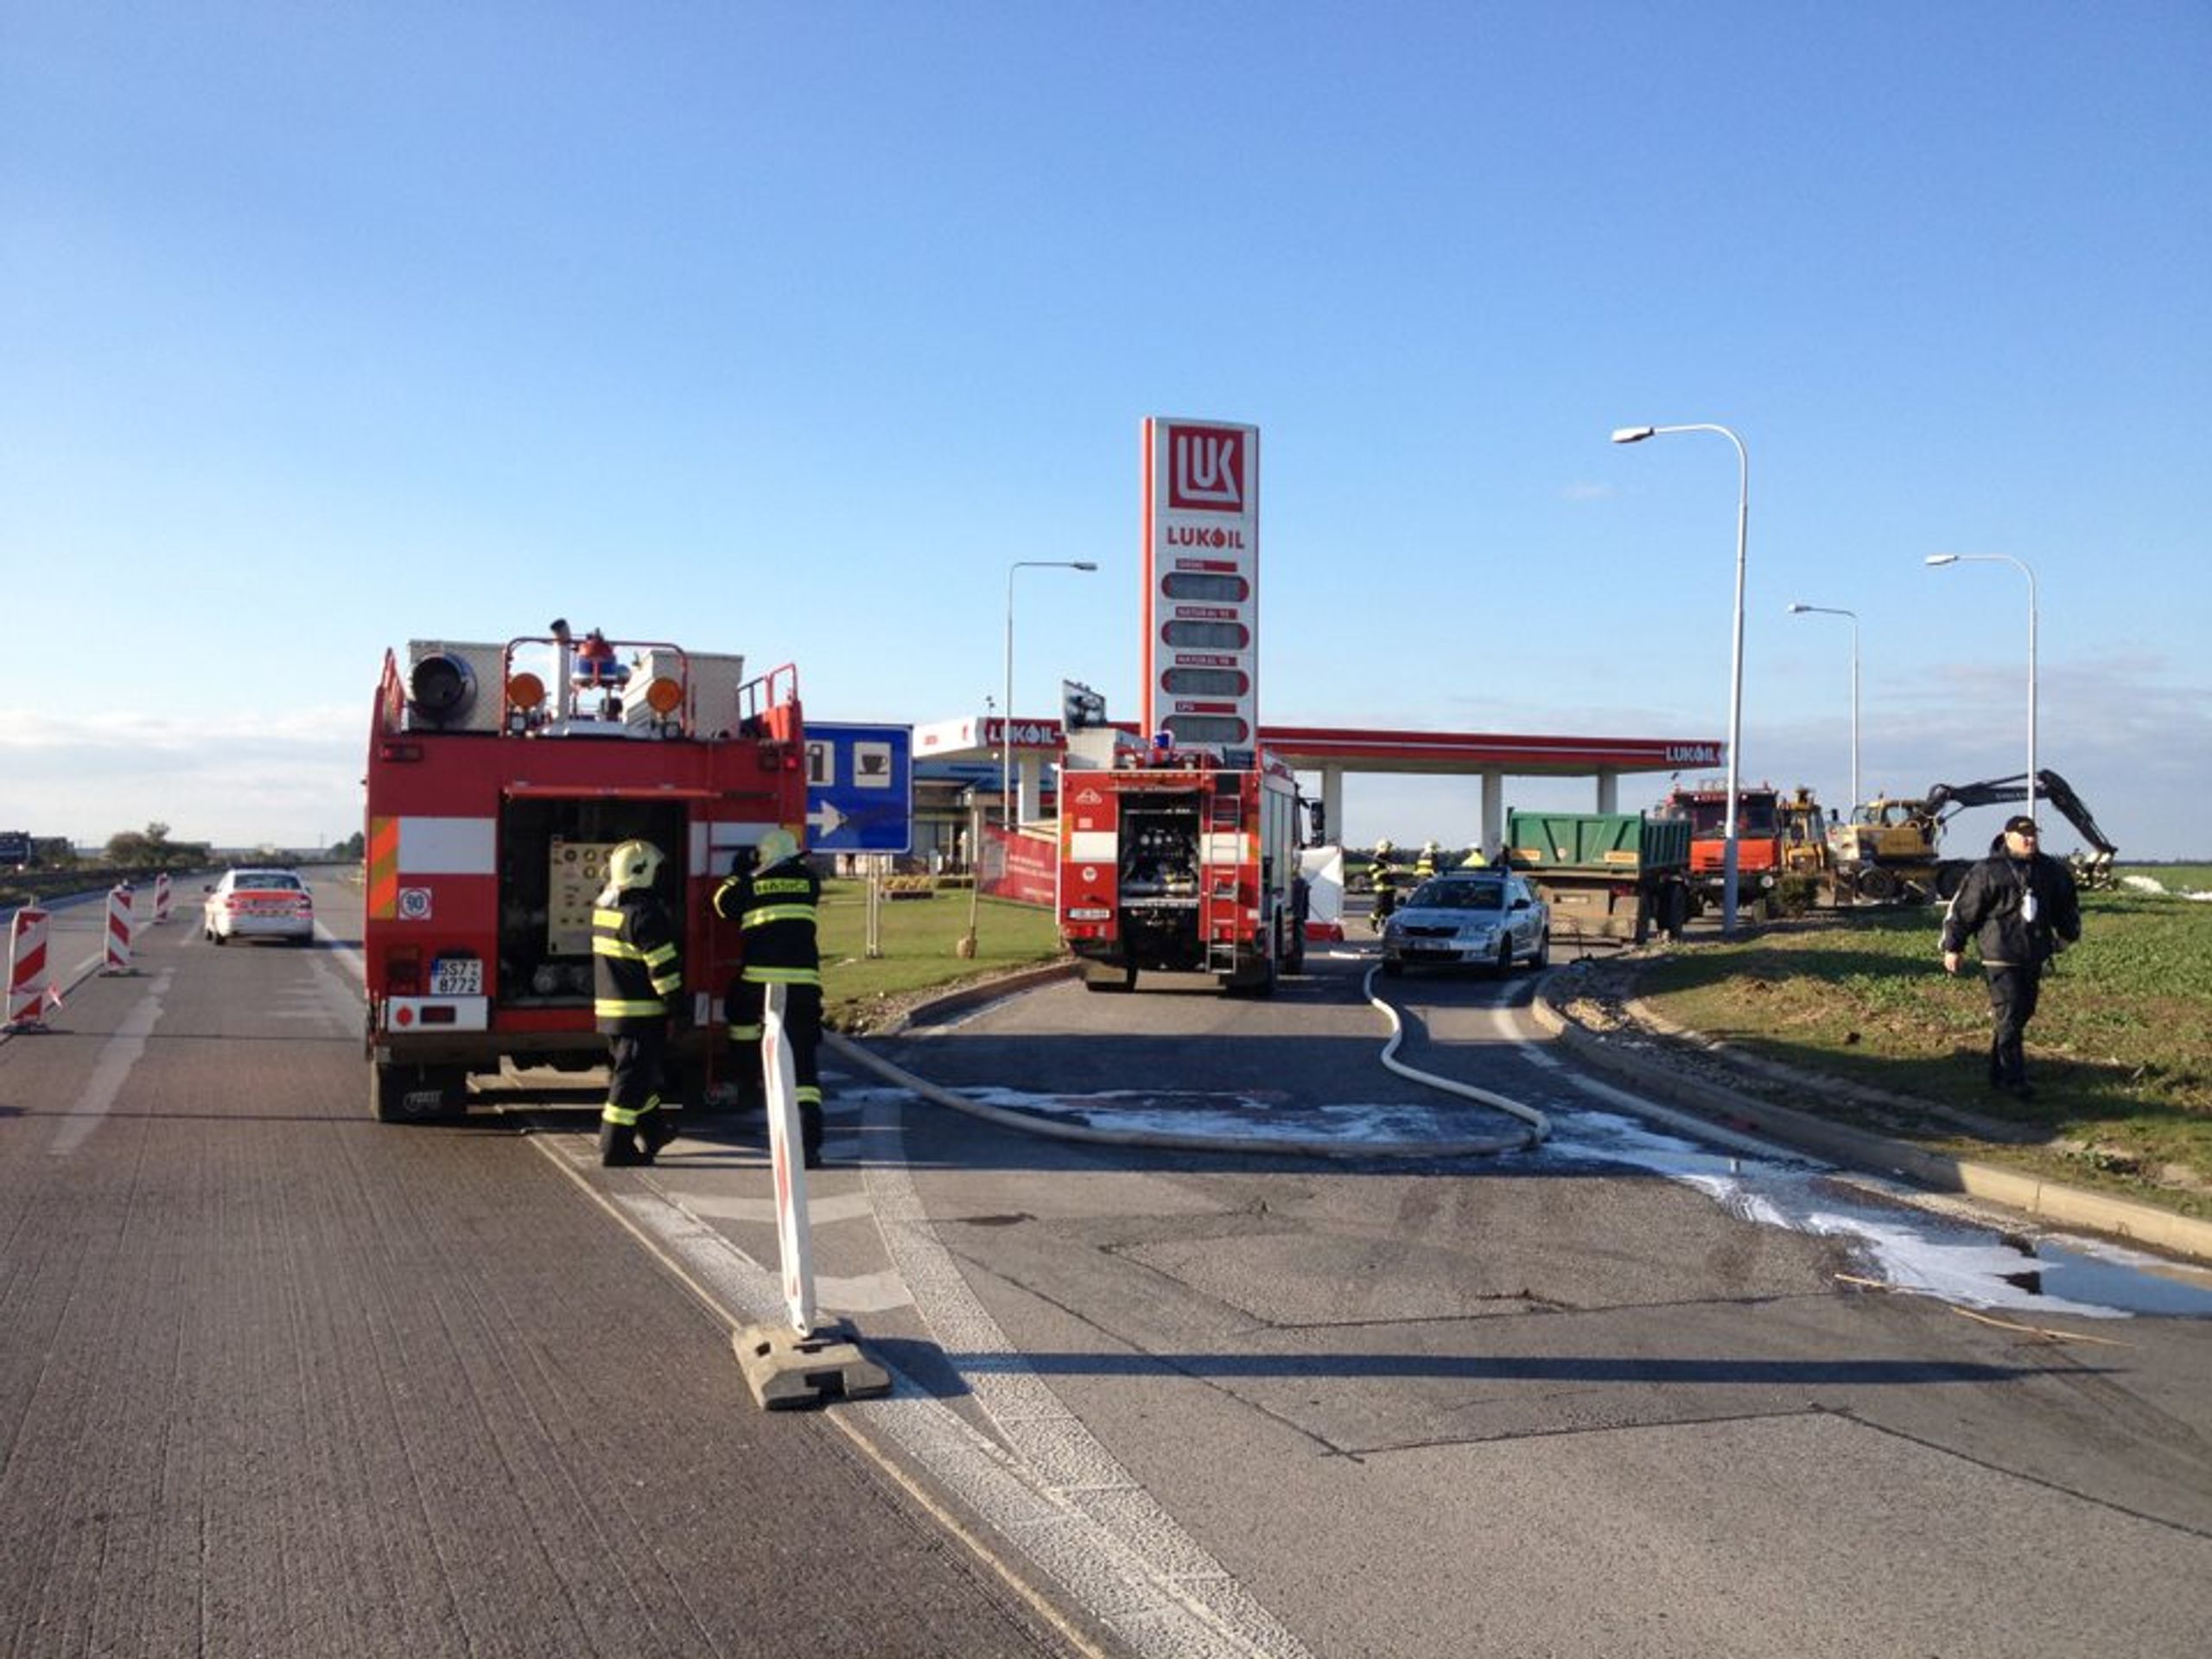 Výbuch nádrže na benzínce ve Zdibech - GALERIE: Exploze čerpací stanice ve Zdibech (6/8)